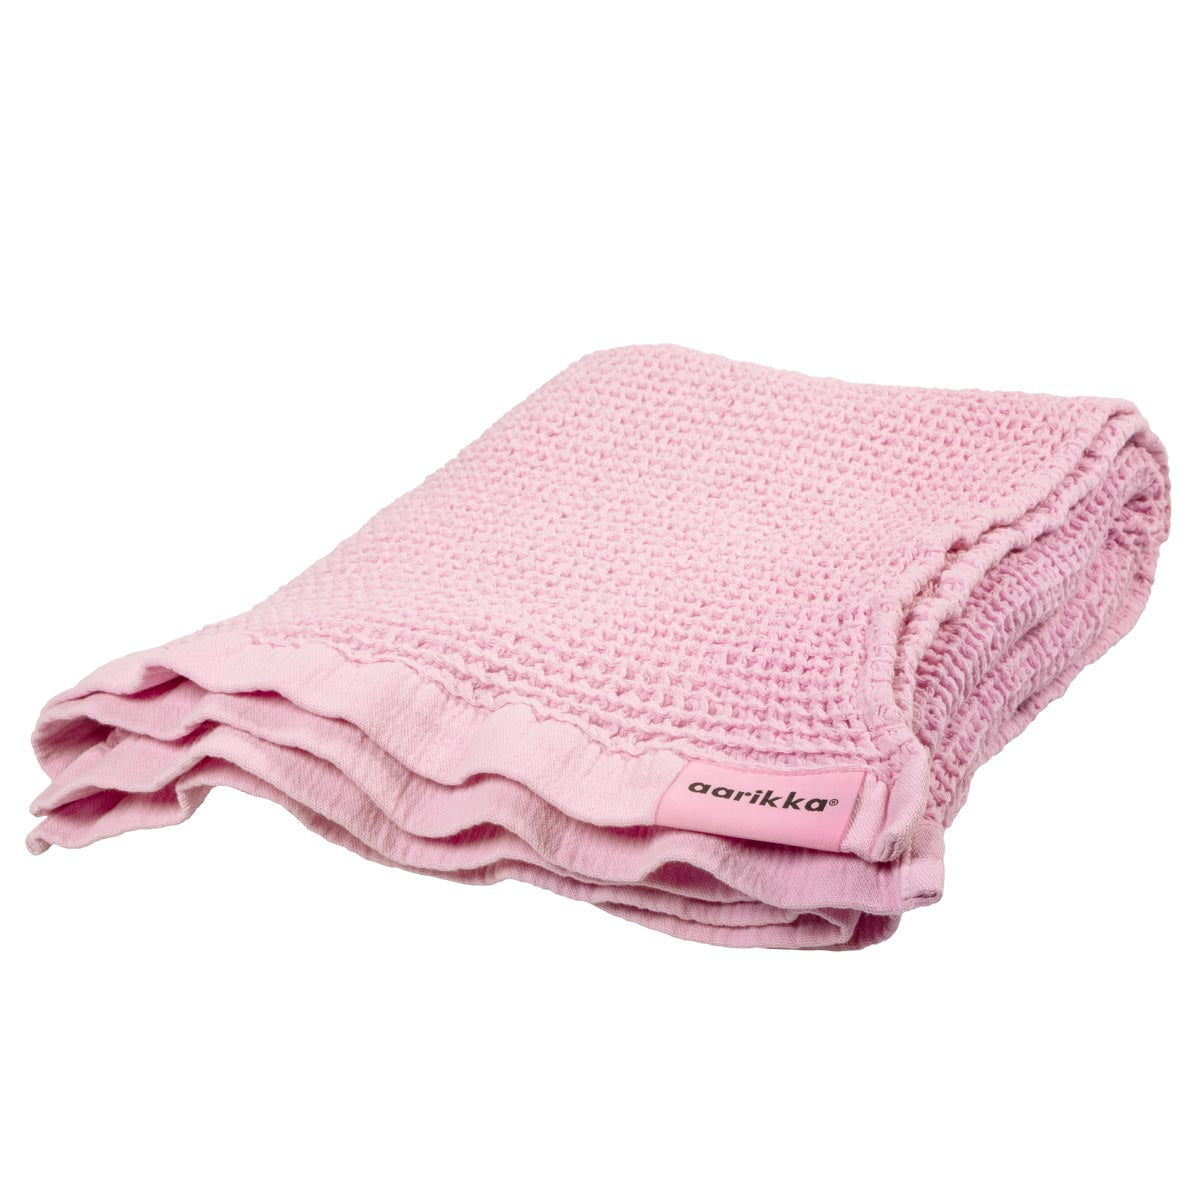 Nuppu bath towel, pink